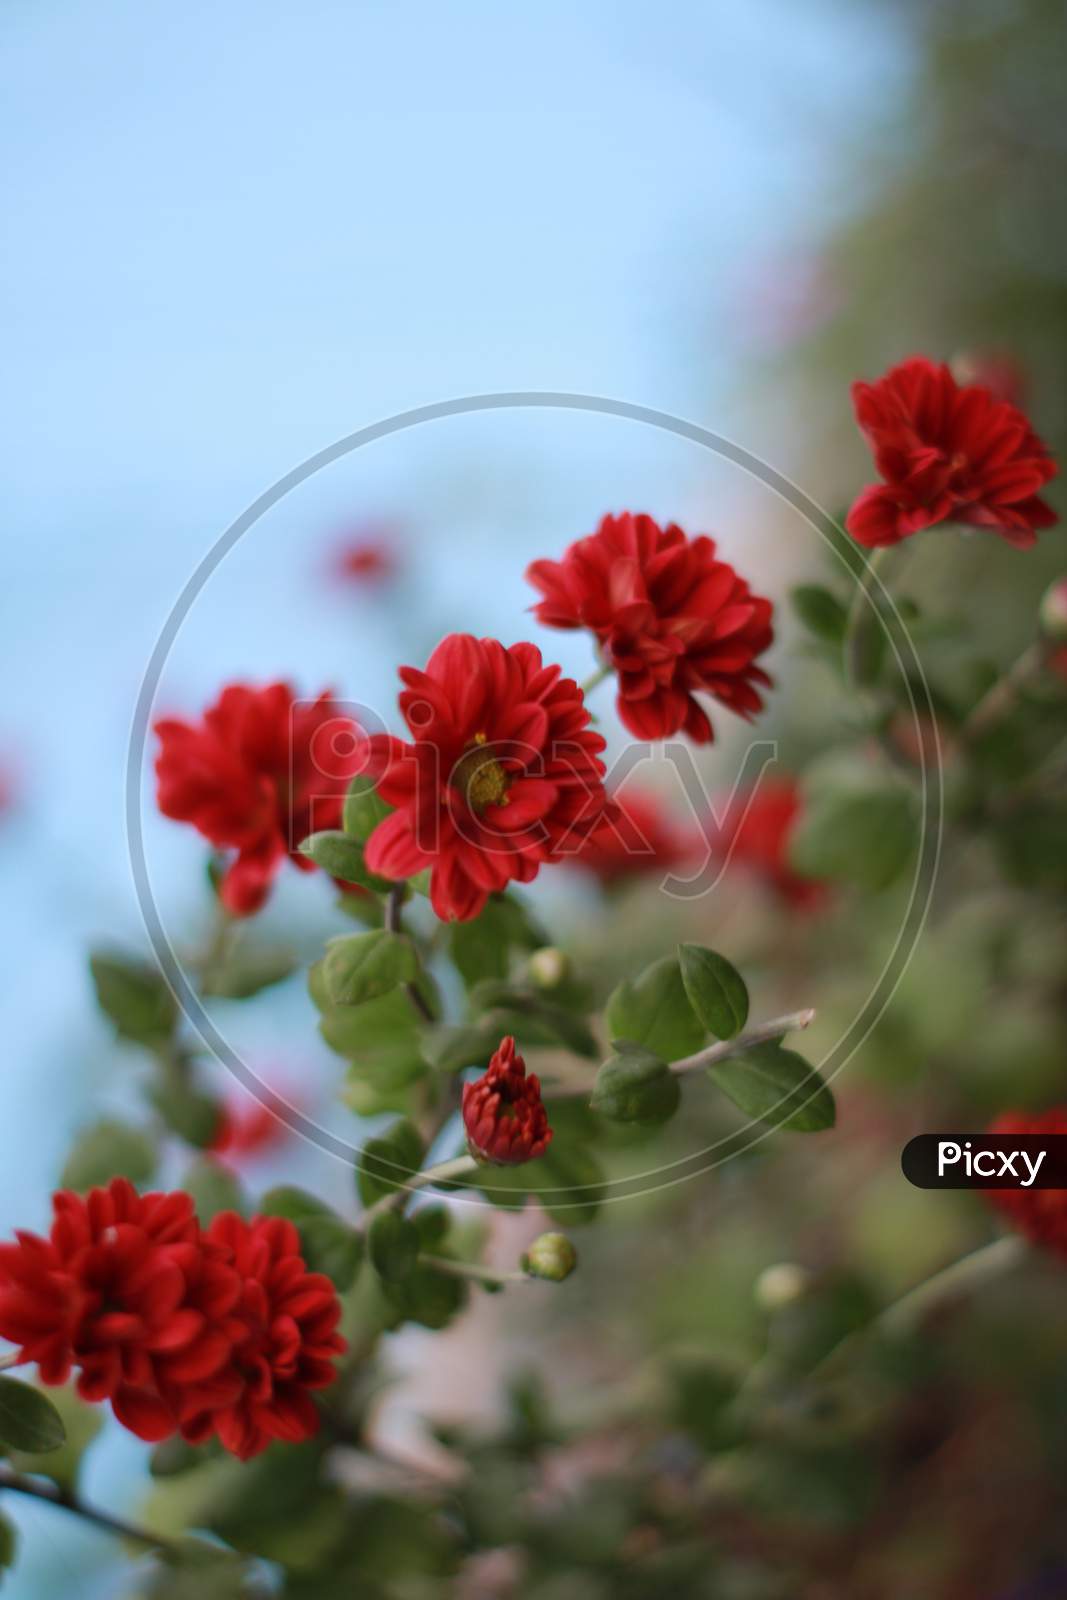 Red Chrysanthemums - Red Shewanti flower